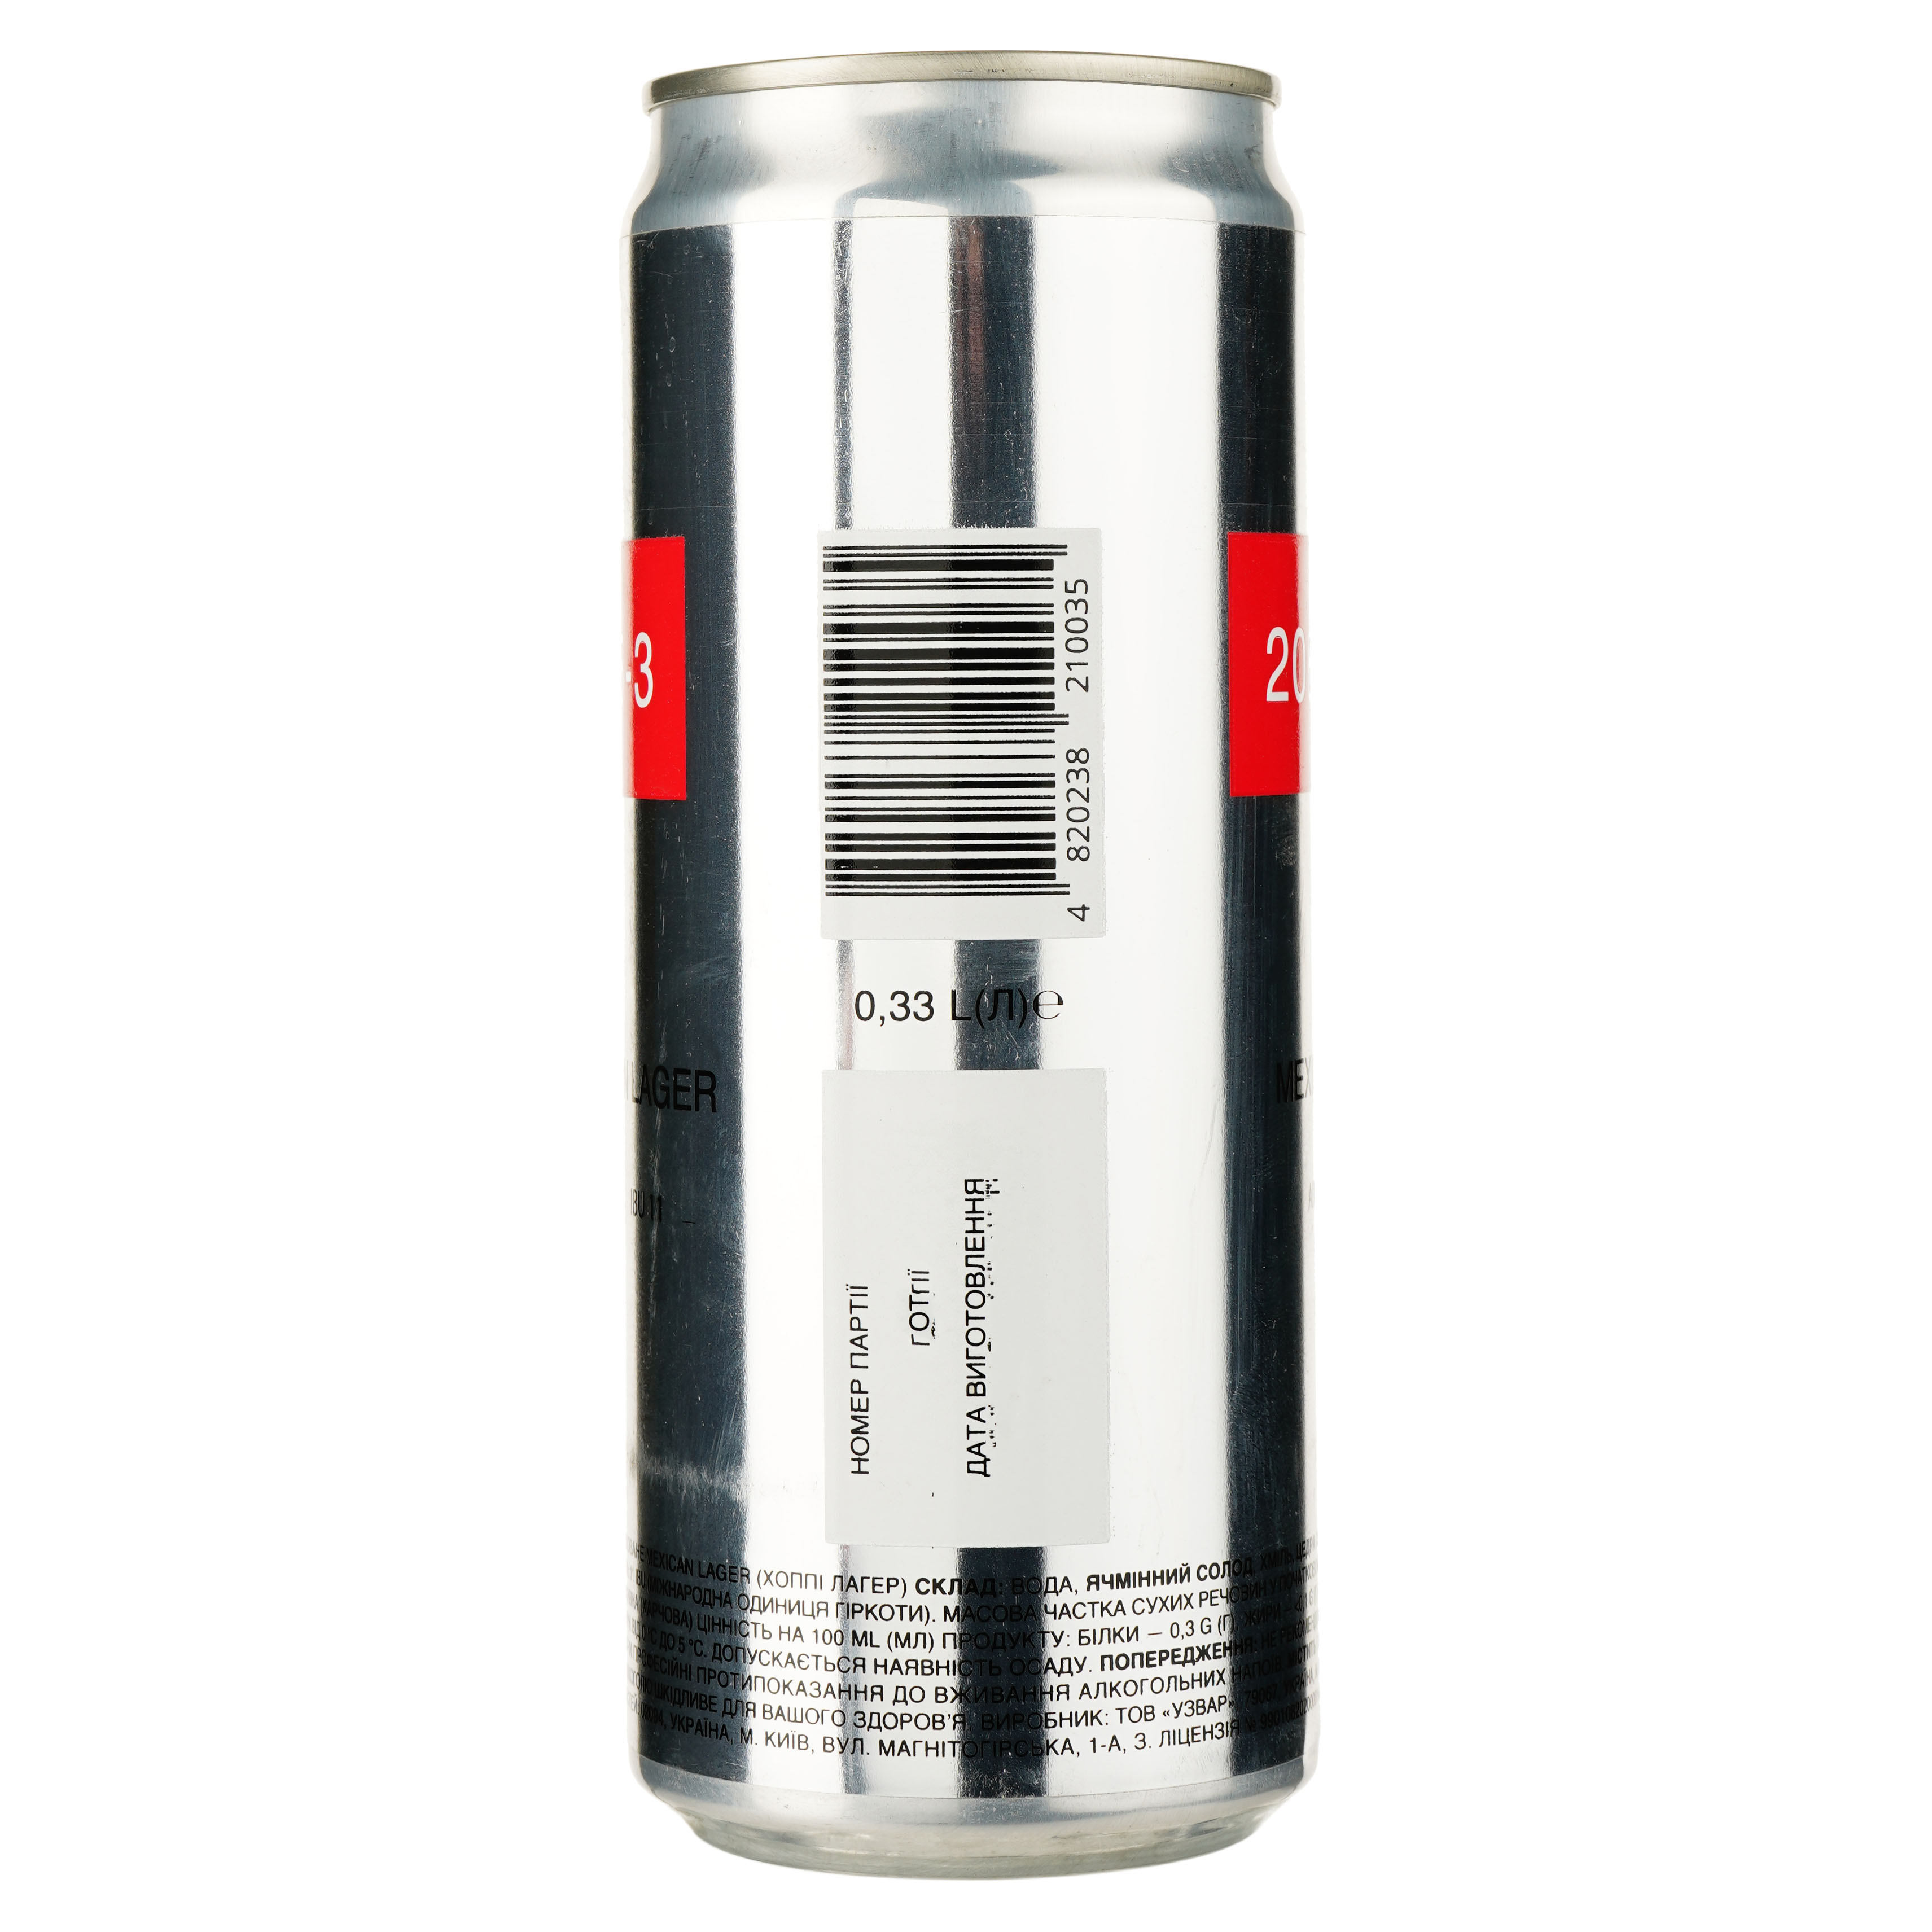 Пиво 2085-3 Hoppy Mexican Lager, світле, нефільтроване, 5,3%, з/б, 0,33 л (842345) - фото 2